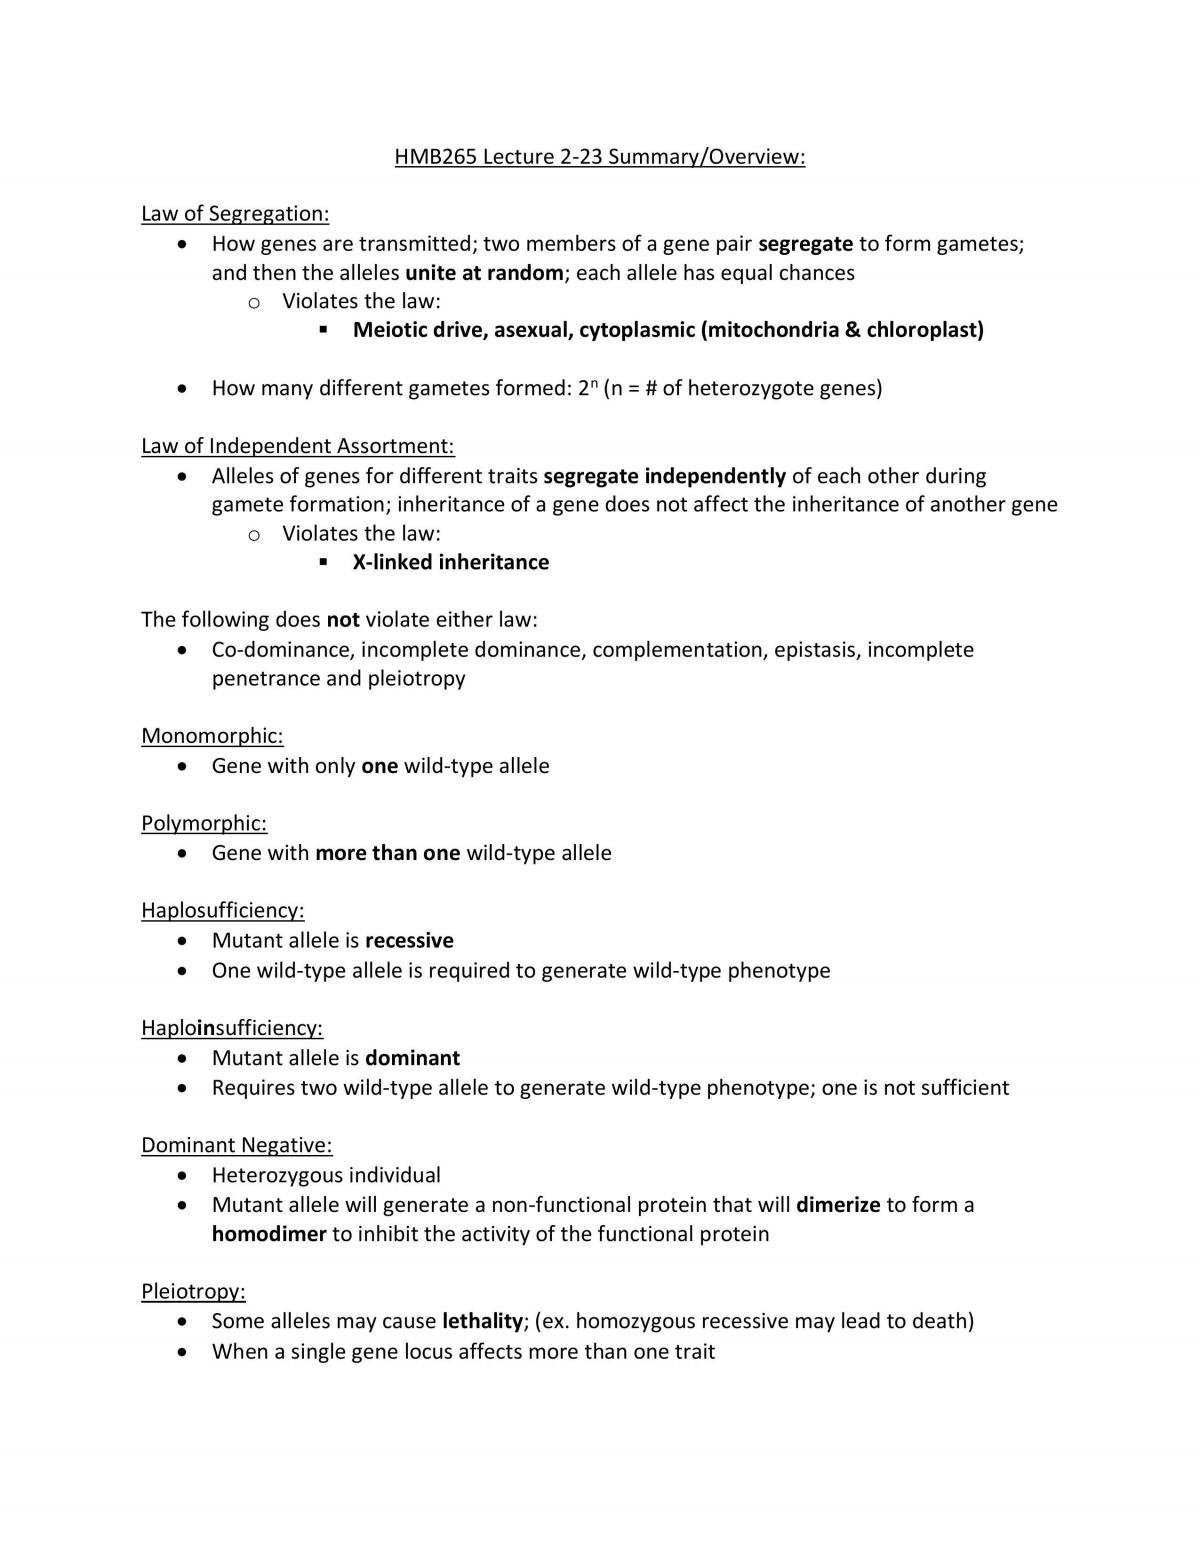 HMB265 Comprehensive Exam Study Guide - Page 1